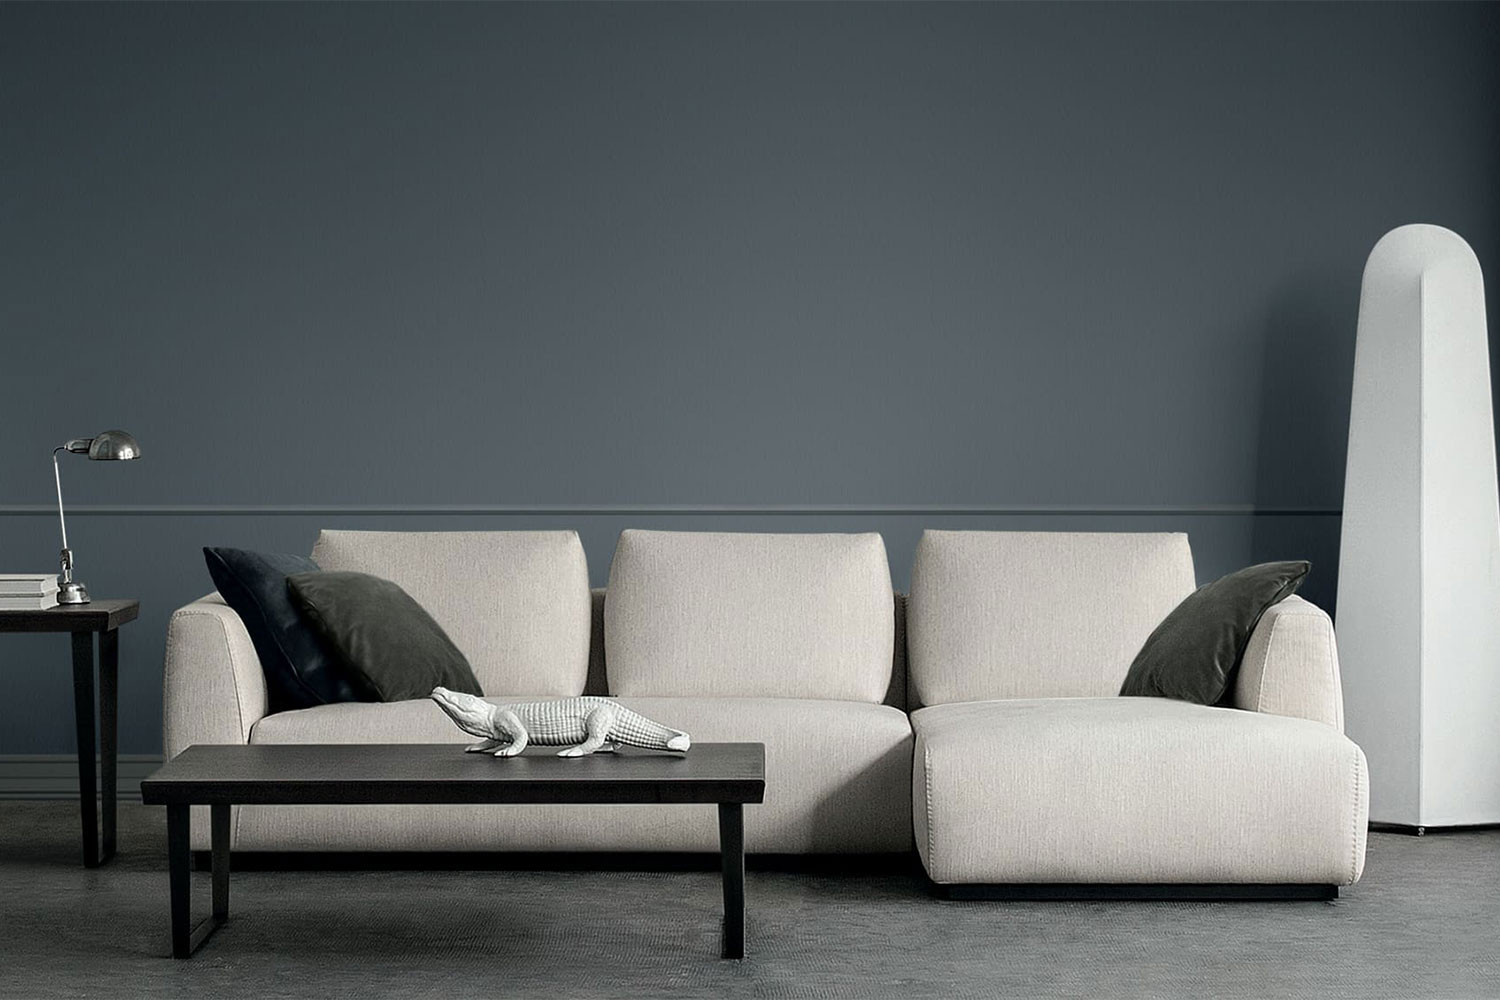 Divano componibile minimal basso dal design moderno, Anyway presenta una seduta larga a cuscino unico e braccioli alti